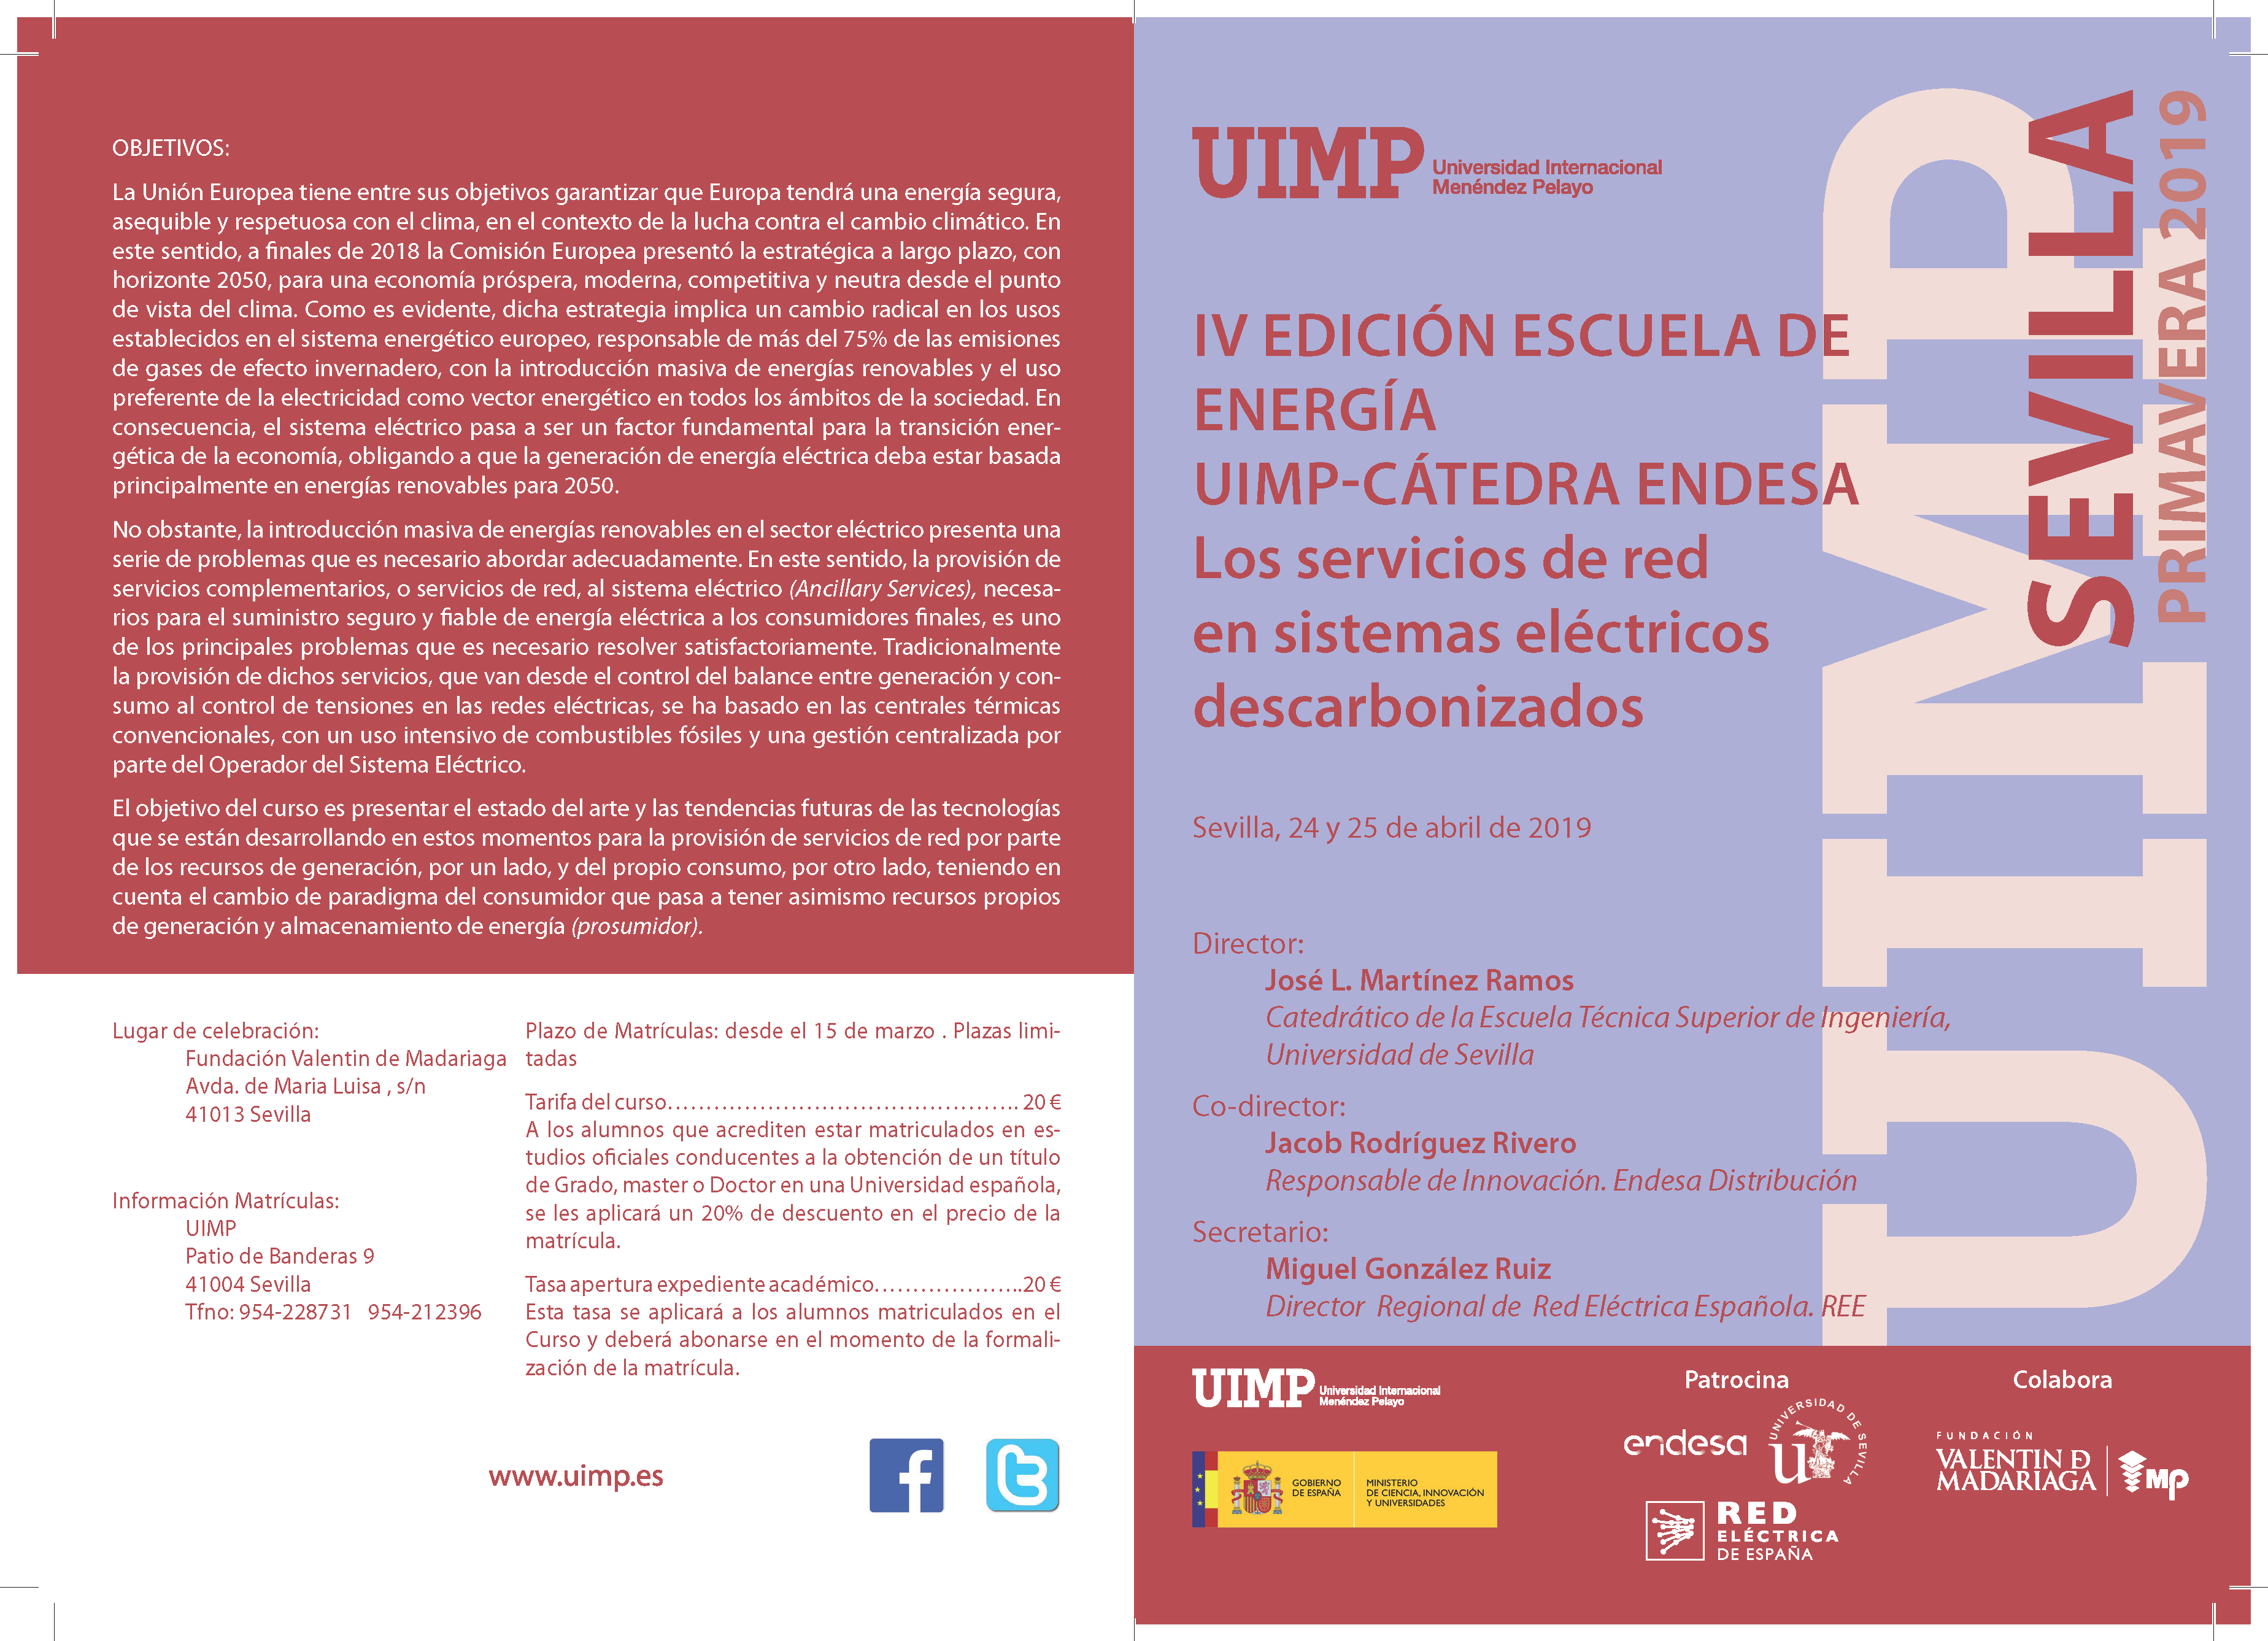 Sevilla UIMP-Catedra Endesa. Los servicios de red en sistemas electricos descarbonizados